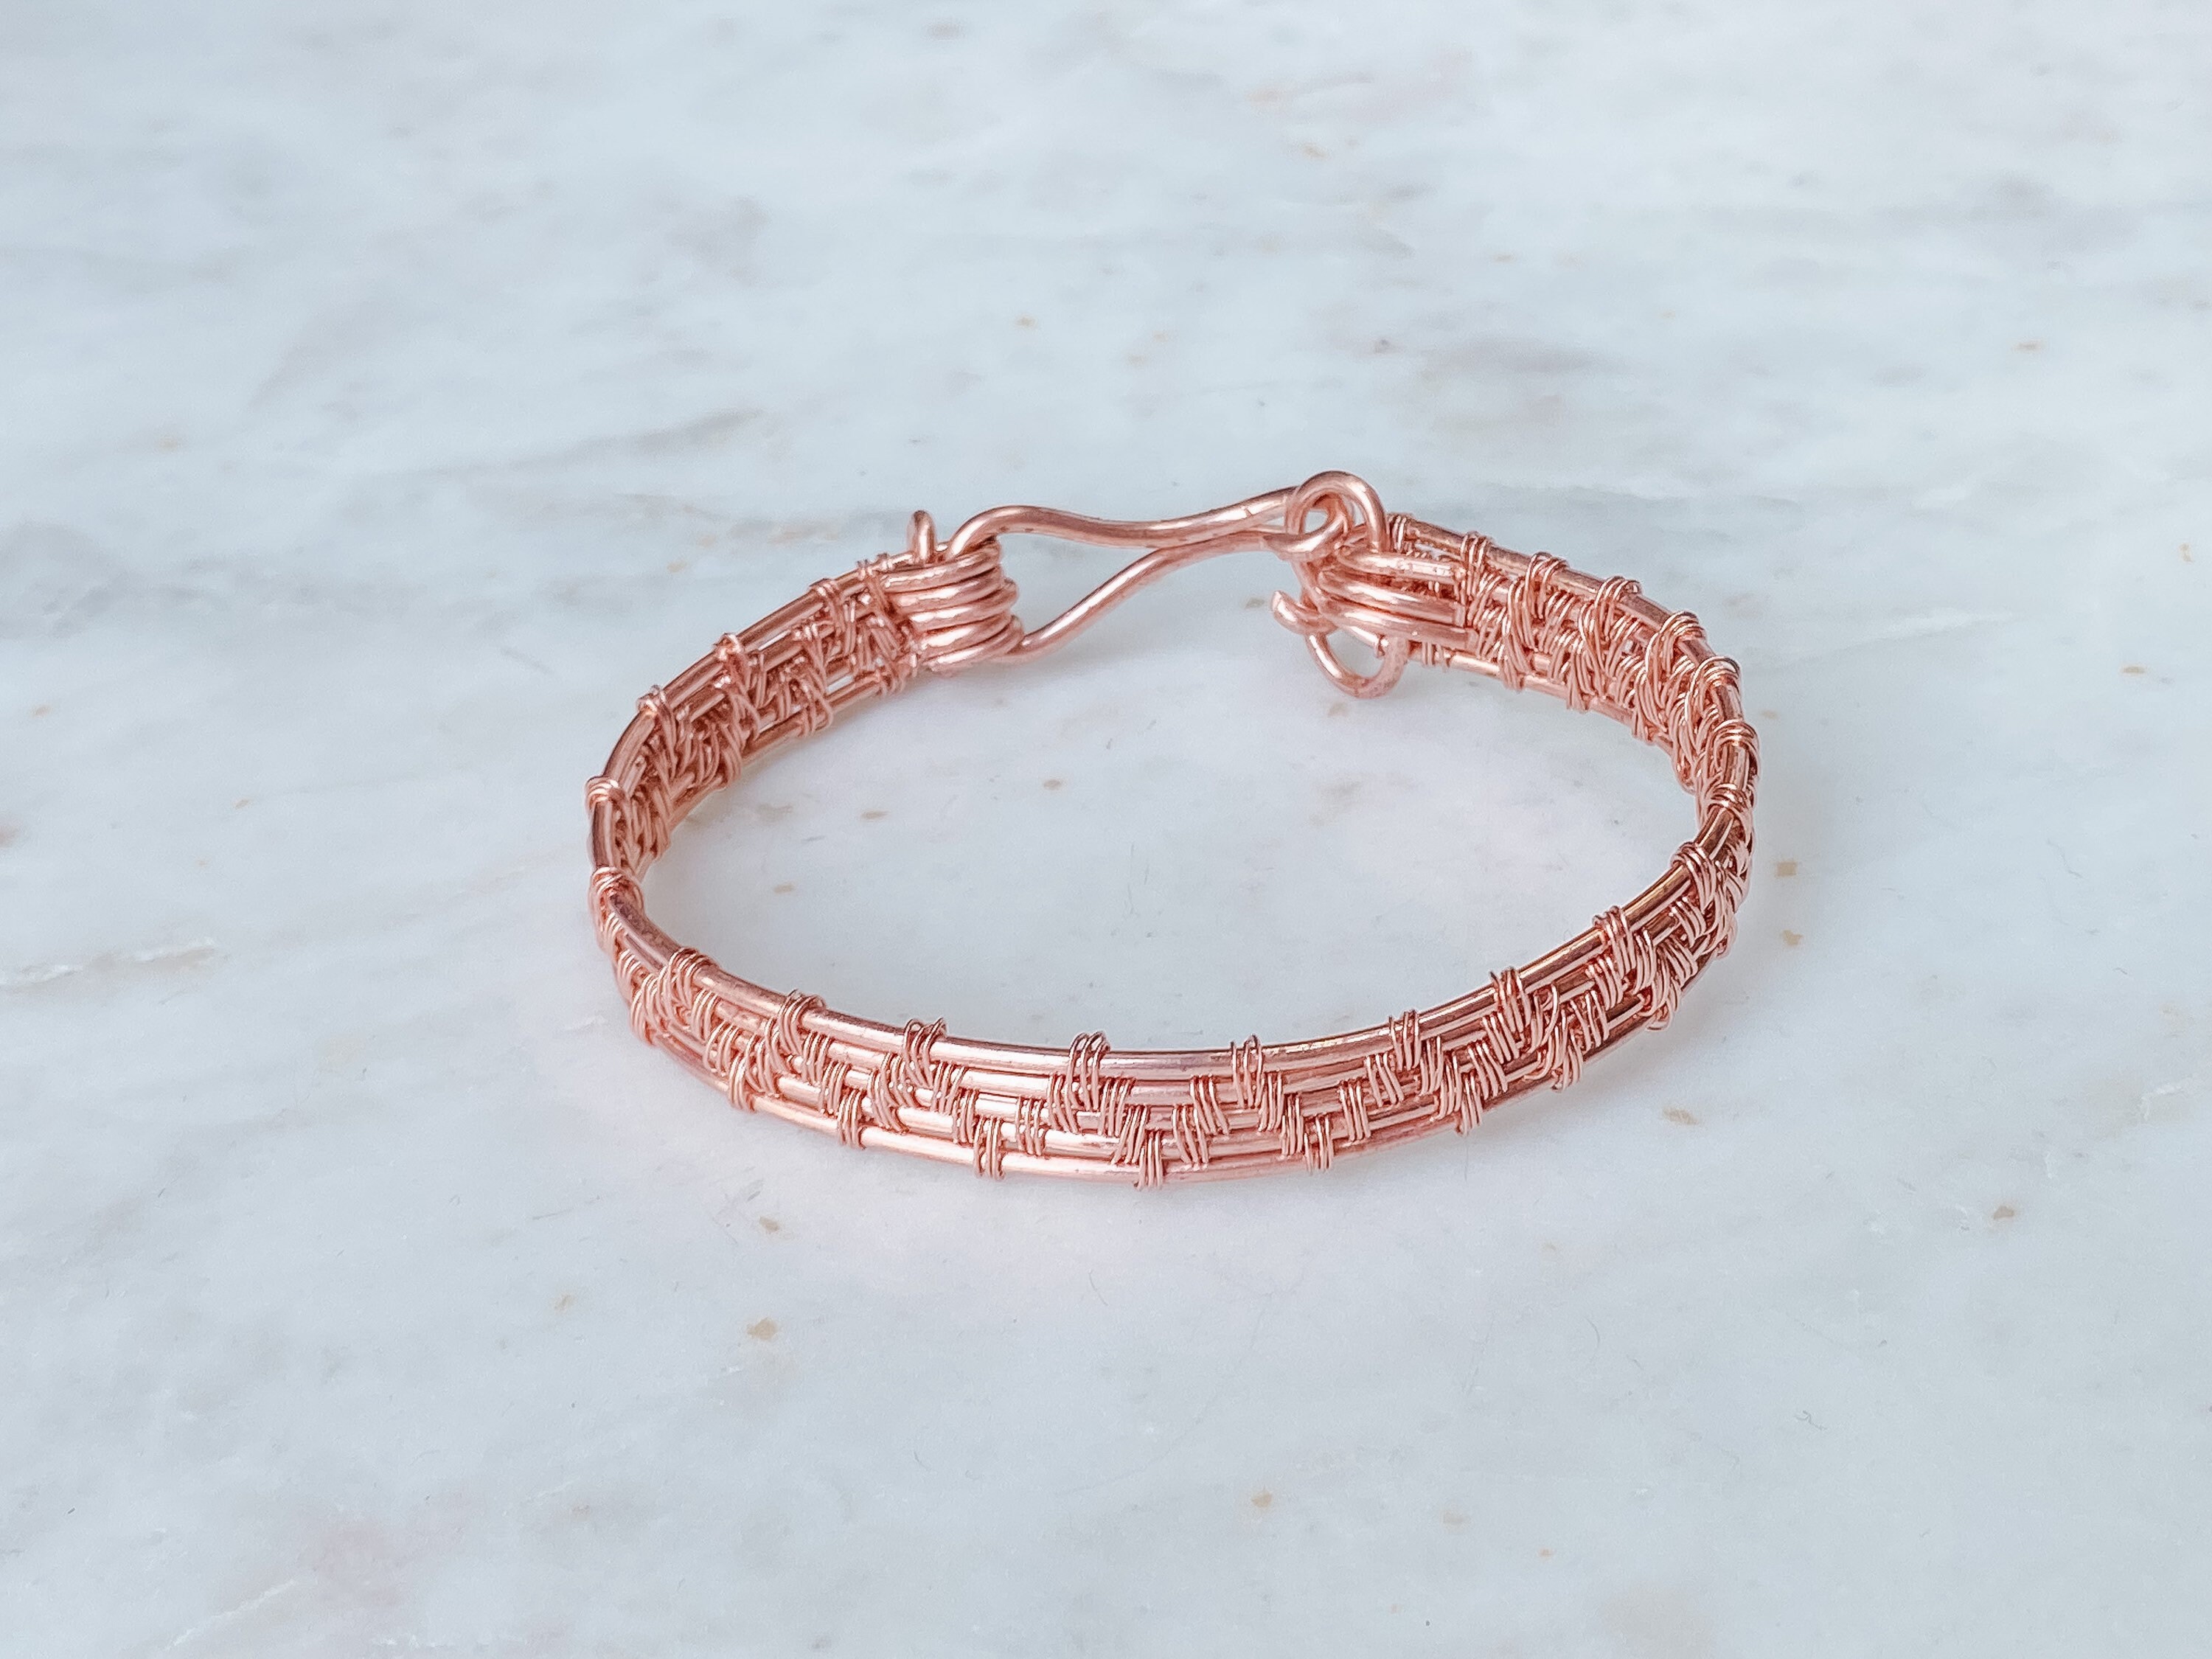 Wire Weaving Bracelets: Basics & Beyond | Craftsy